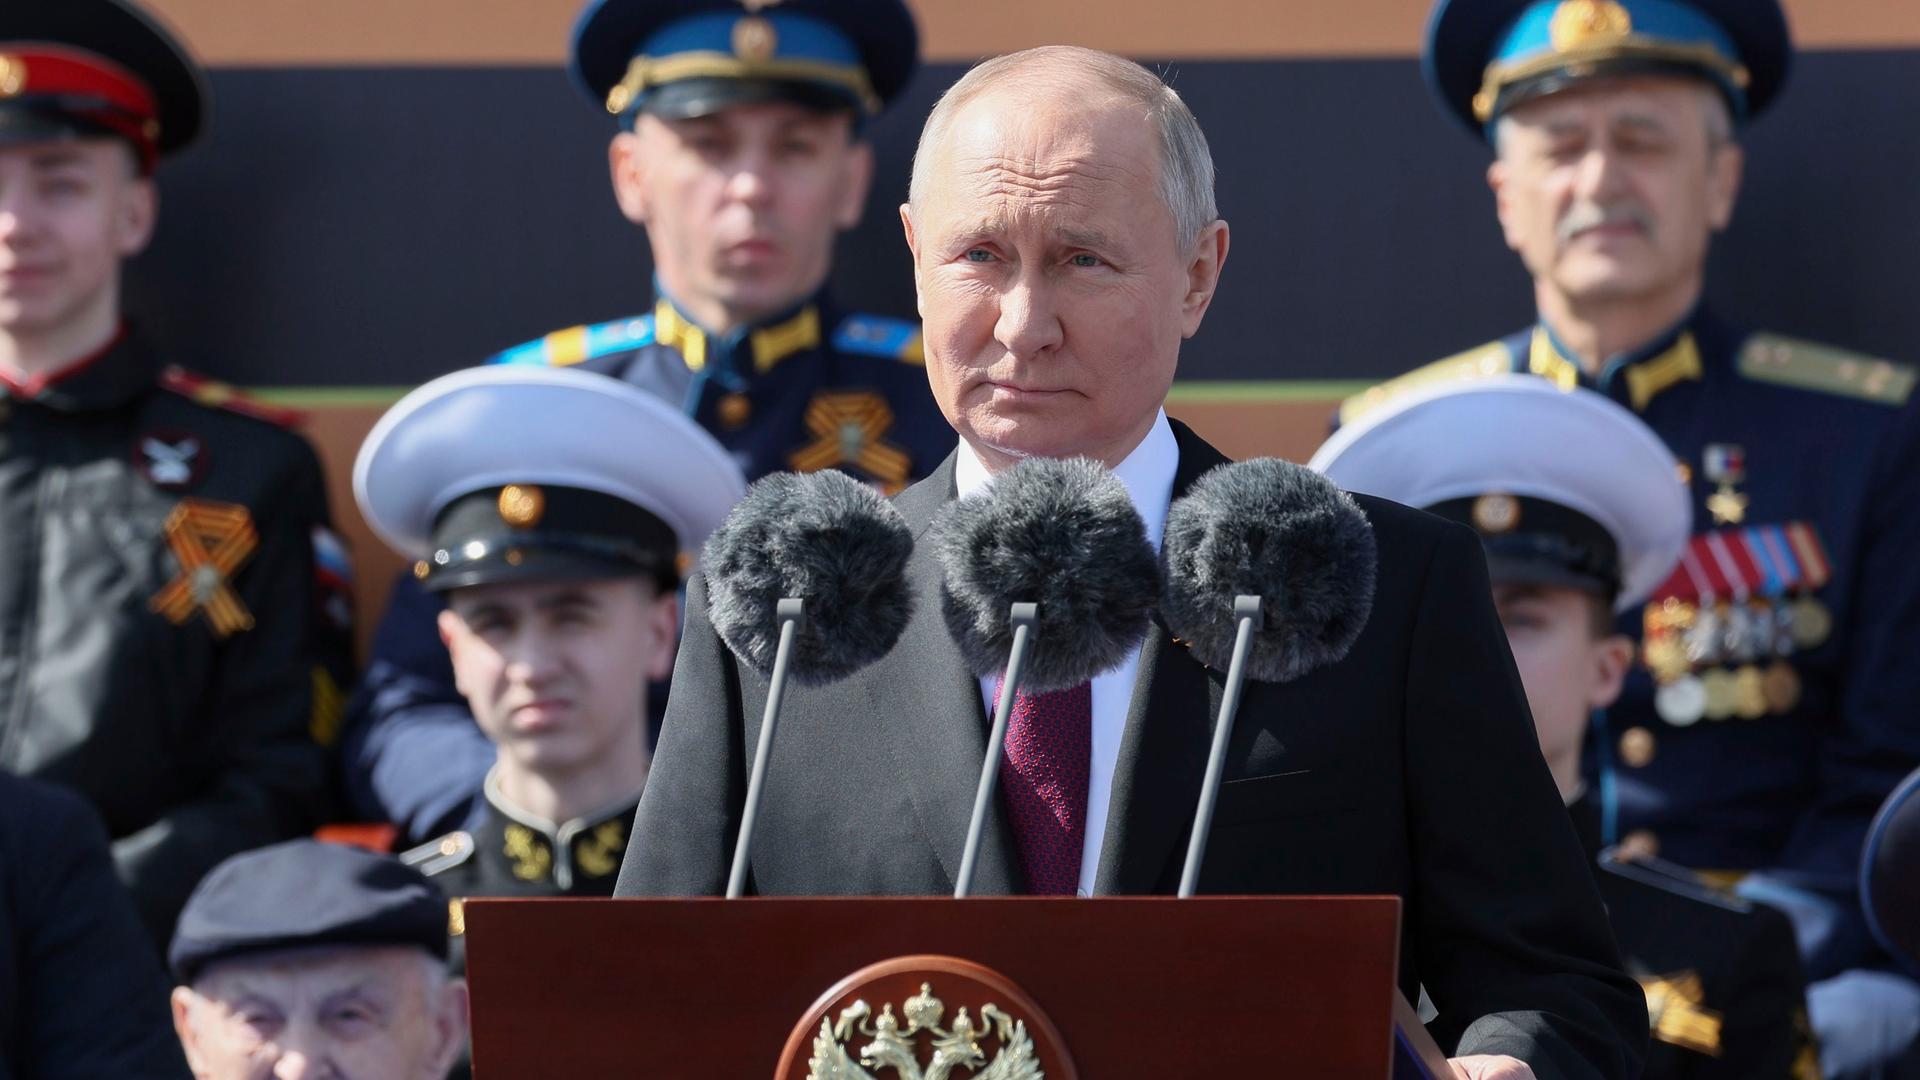 Russland, Moskau: Der russische Präsident Wladimir Putin hält eine Rede während der Militärparade zum Tag des Sieges anlässlich des 78. Jahrestages des Endes des Zweiten Weltkrieges auf dem Roten Platz in Moskau.